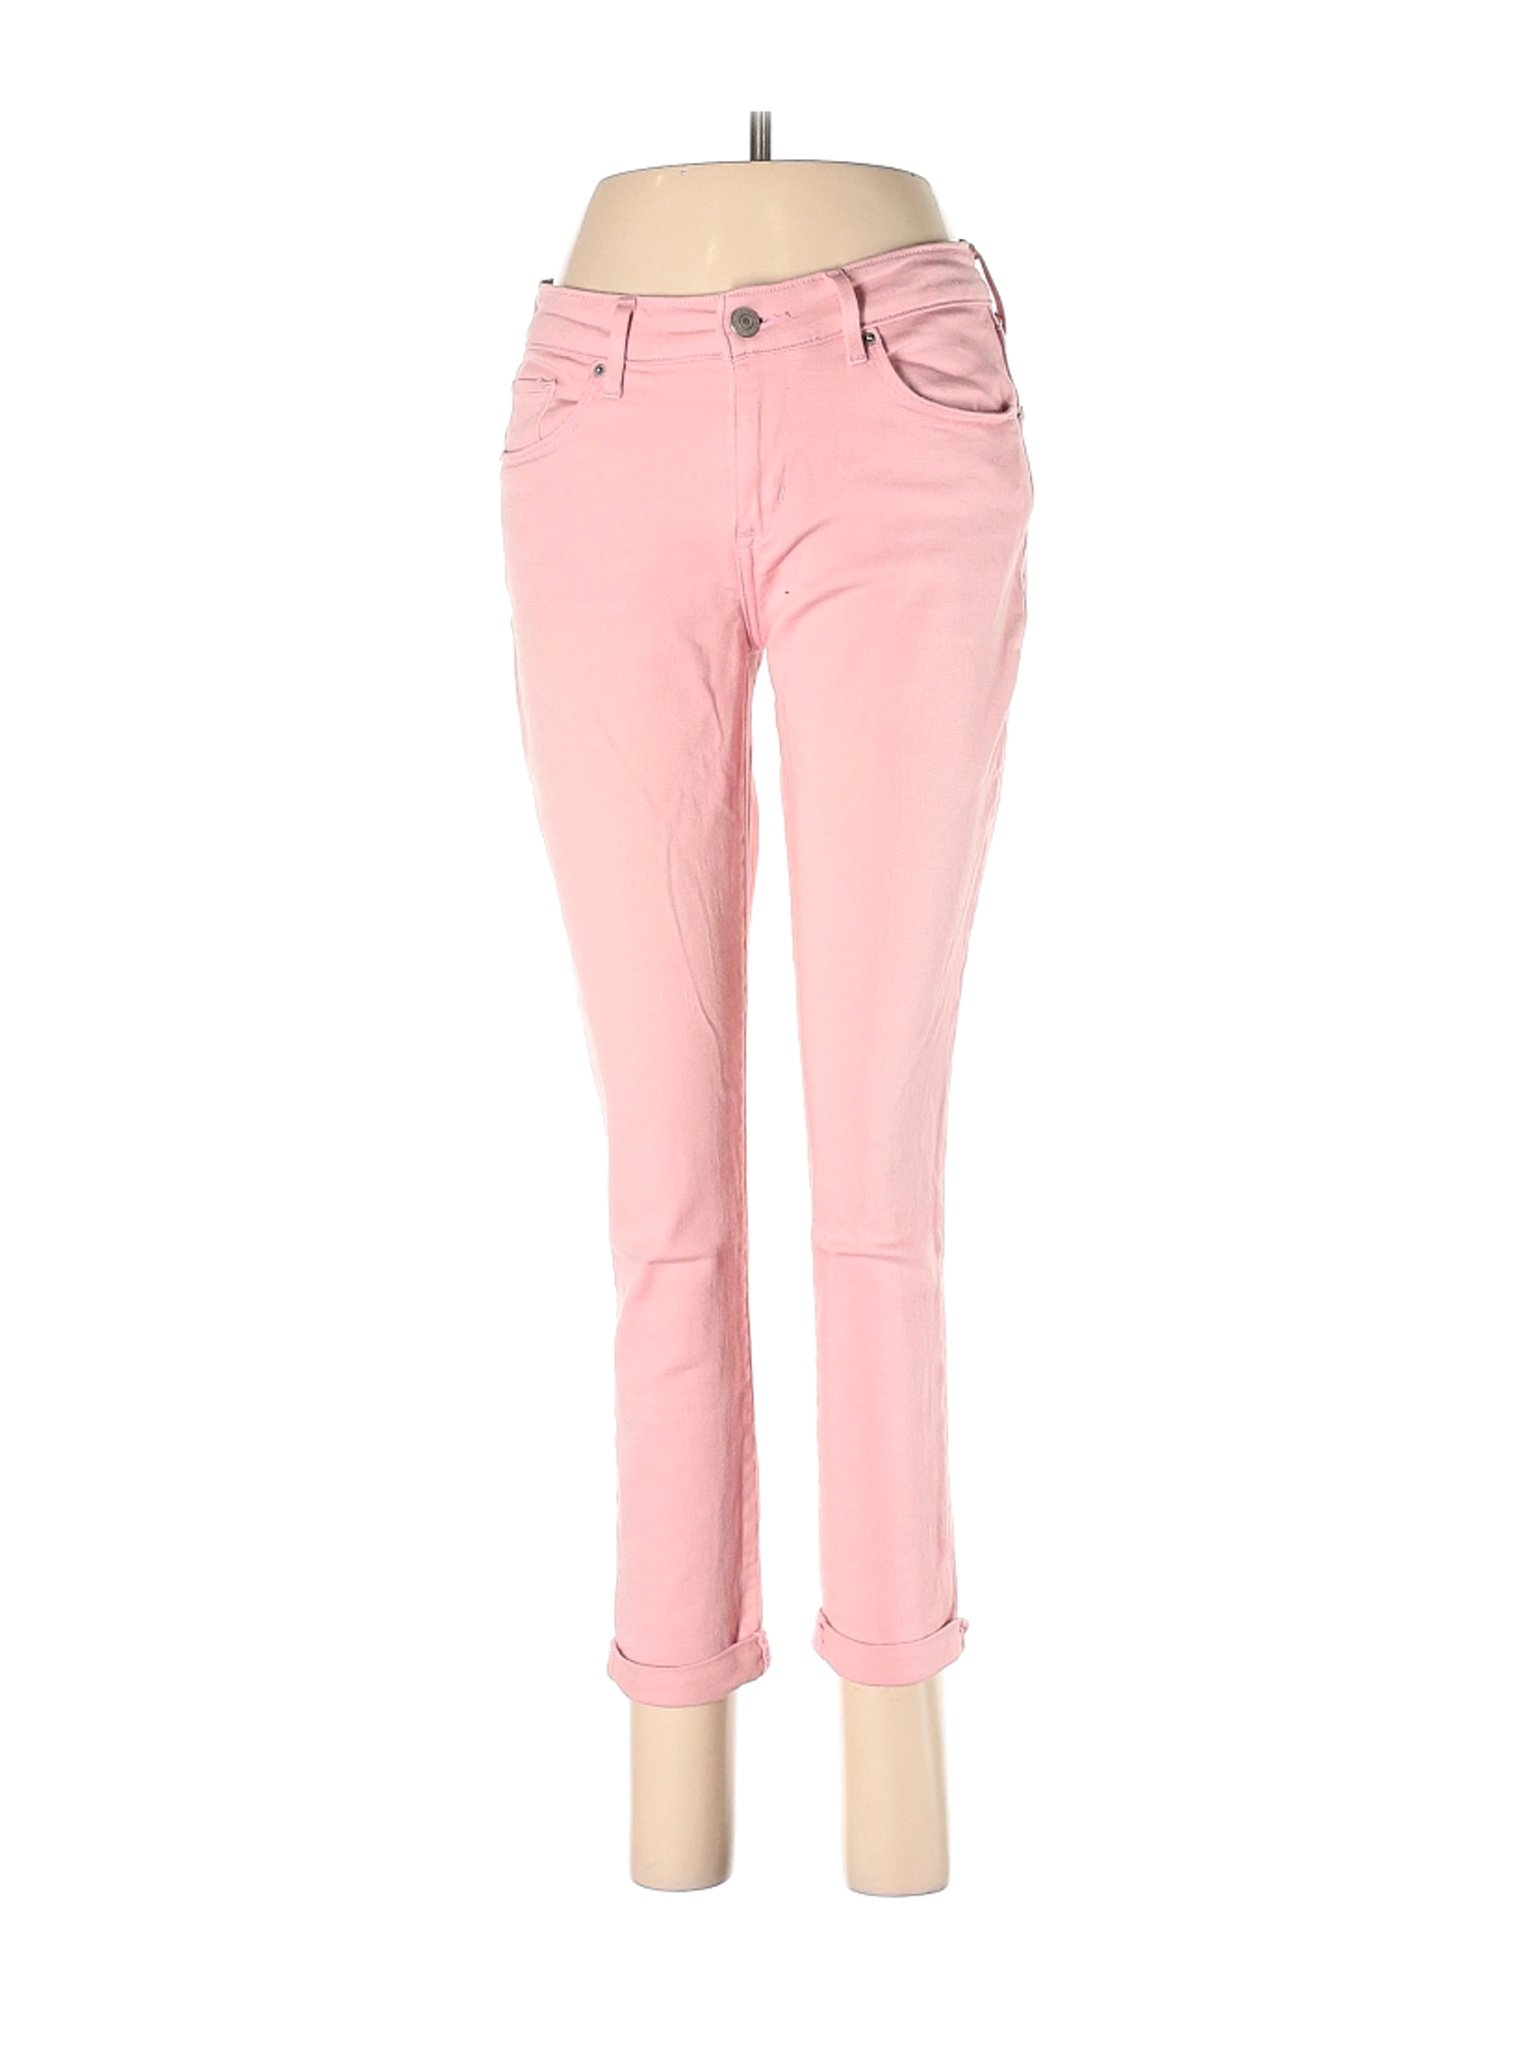 Levi's Women Pink Jeans 27W | eBay